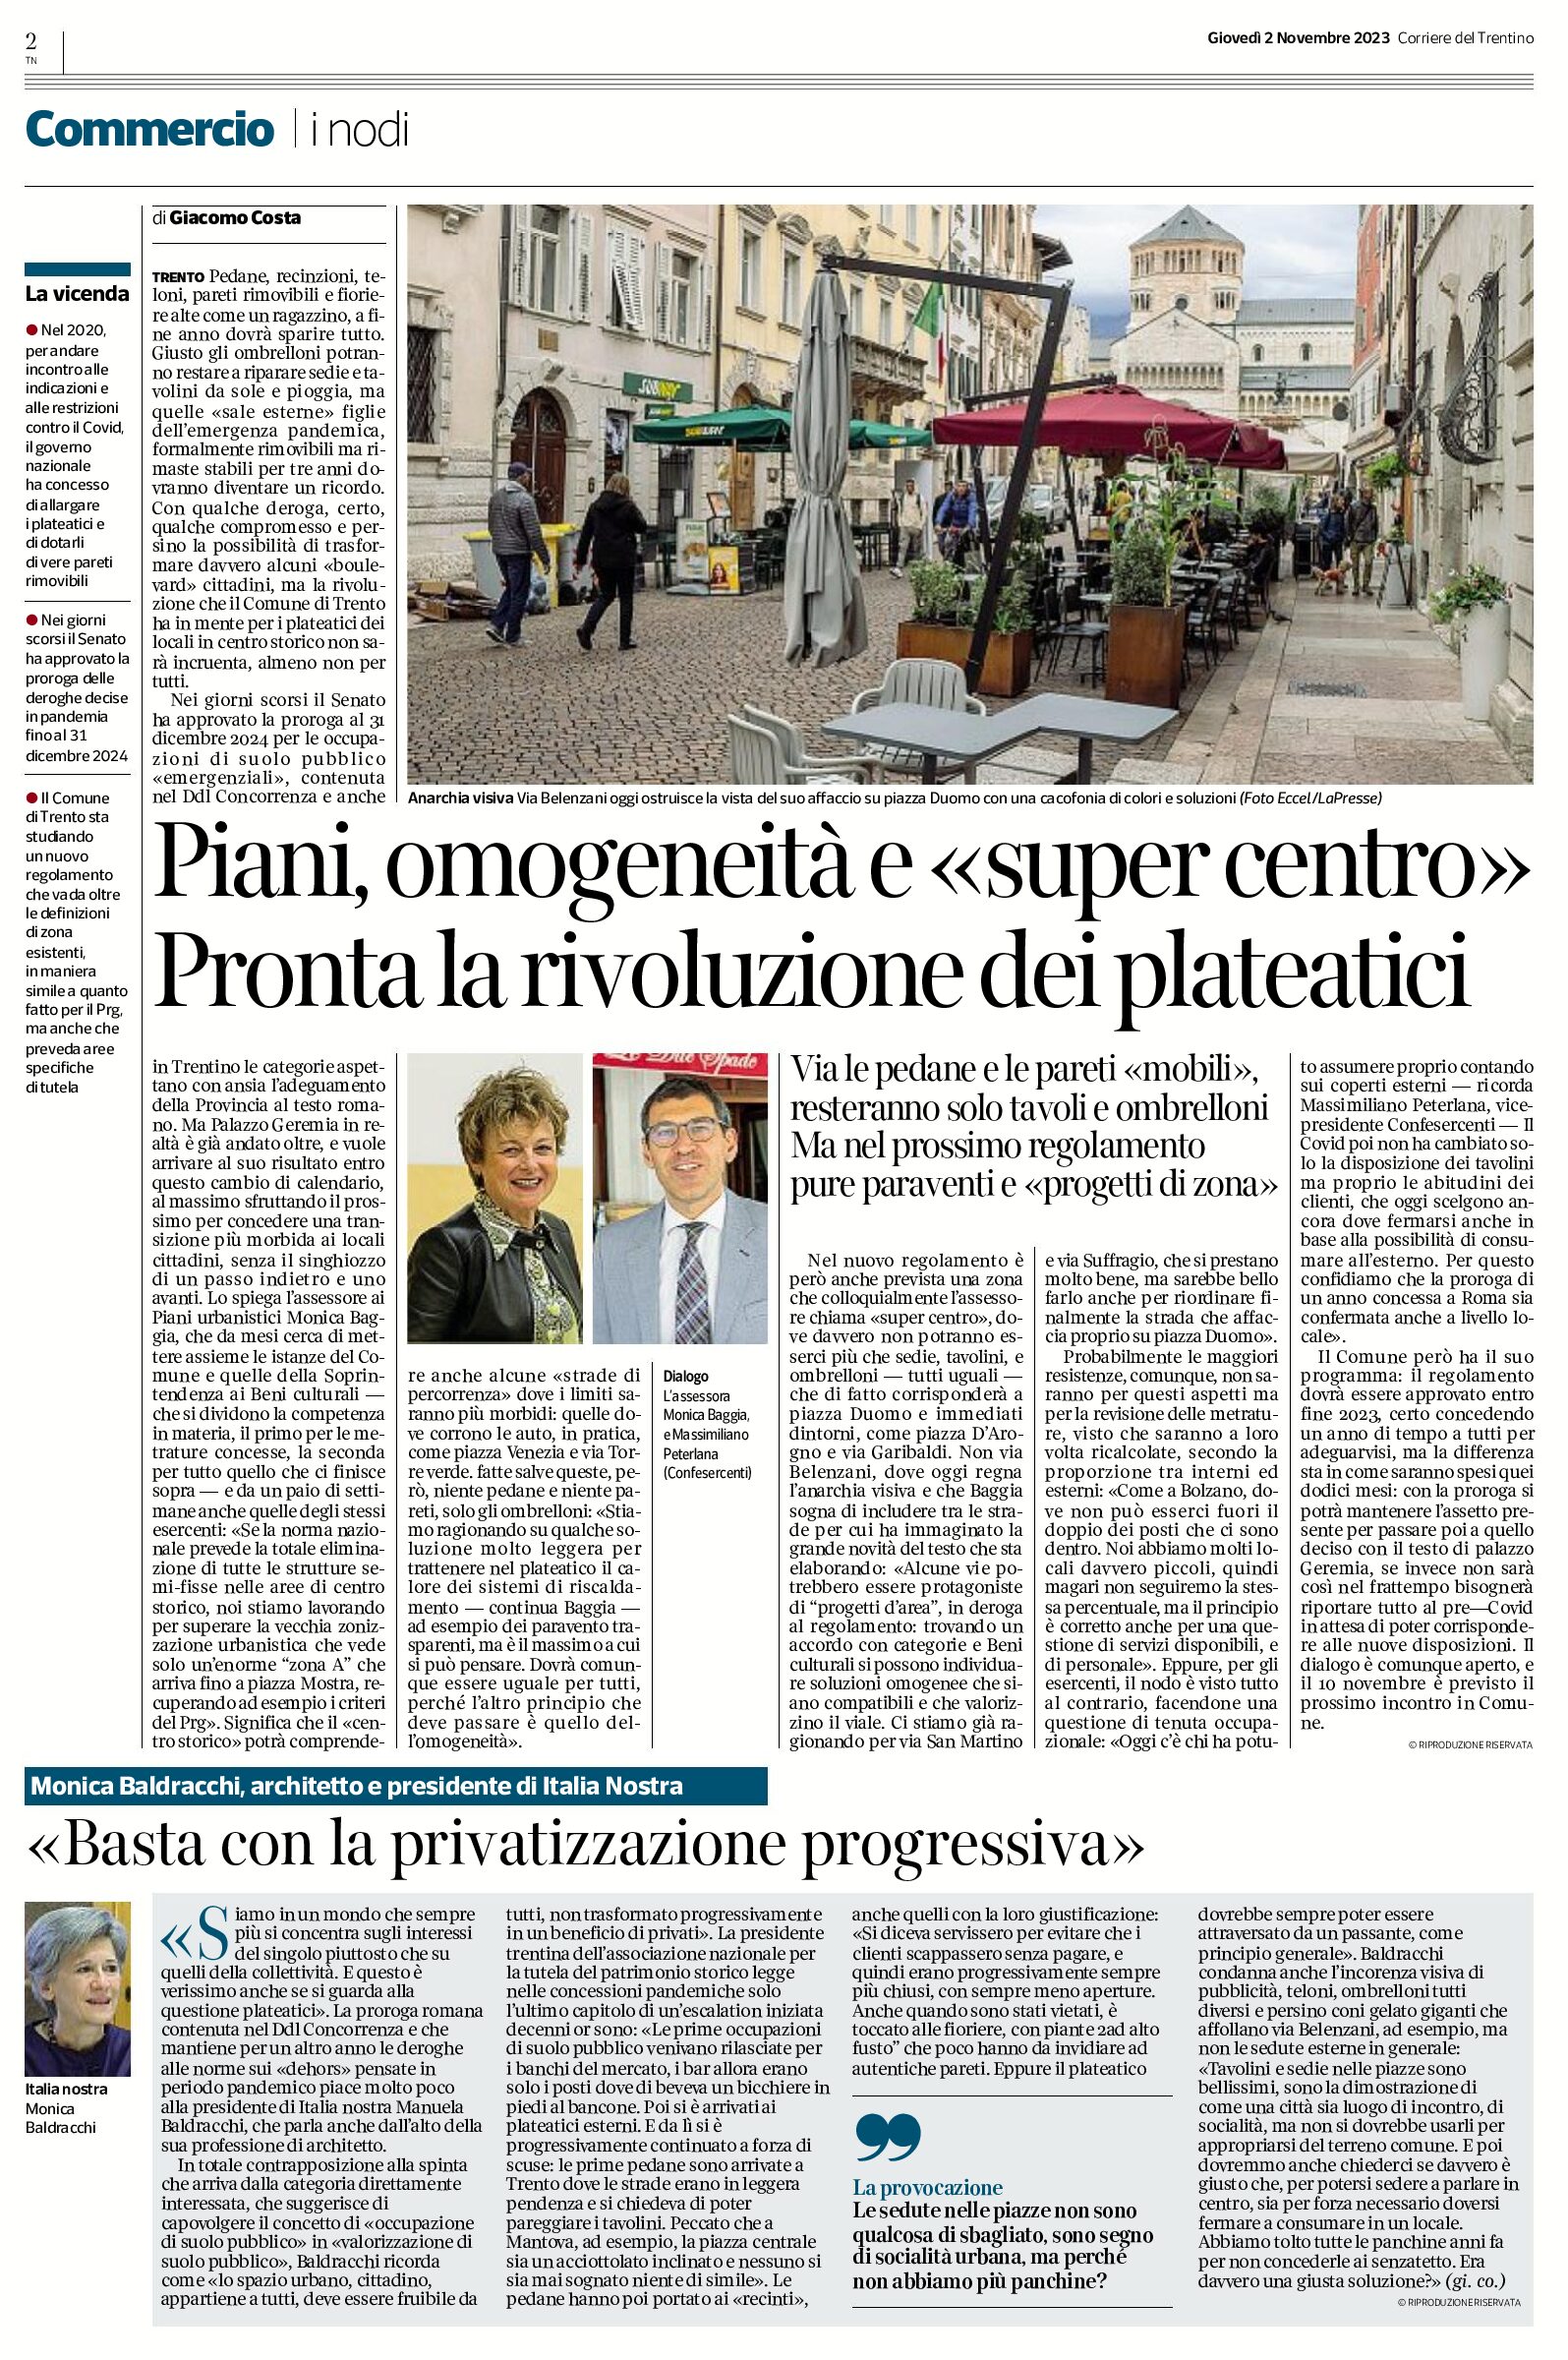 Trento, plateatici: Baldracchi di Italia Nostra “basta con la privatizzazione progressiva”